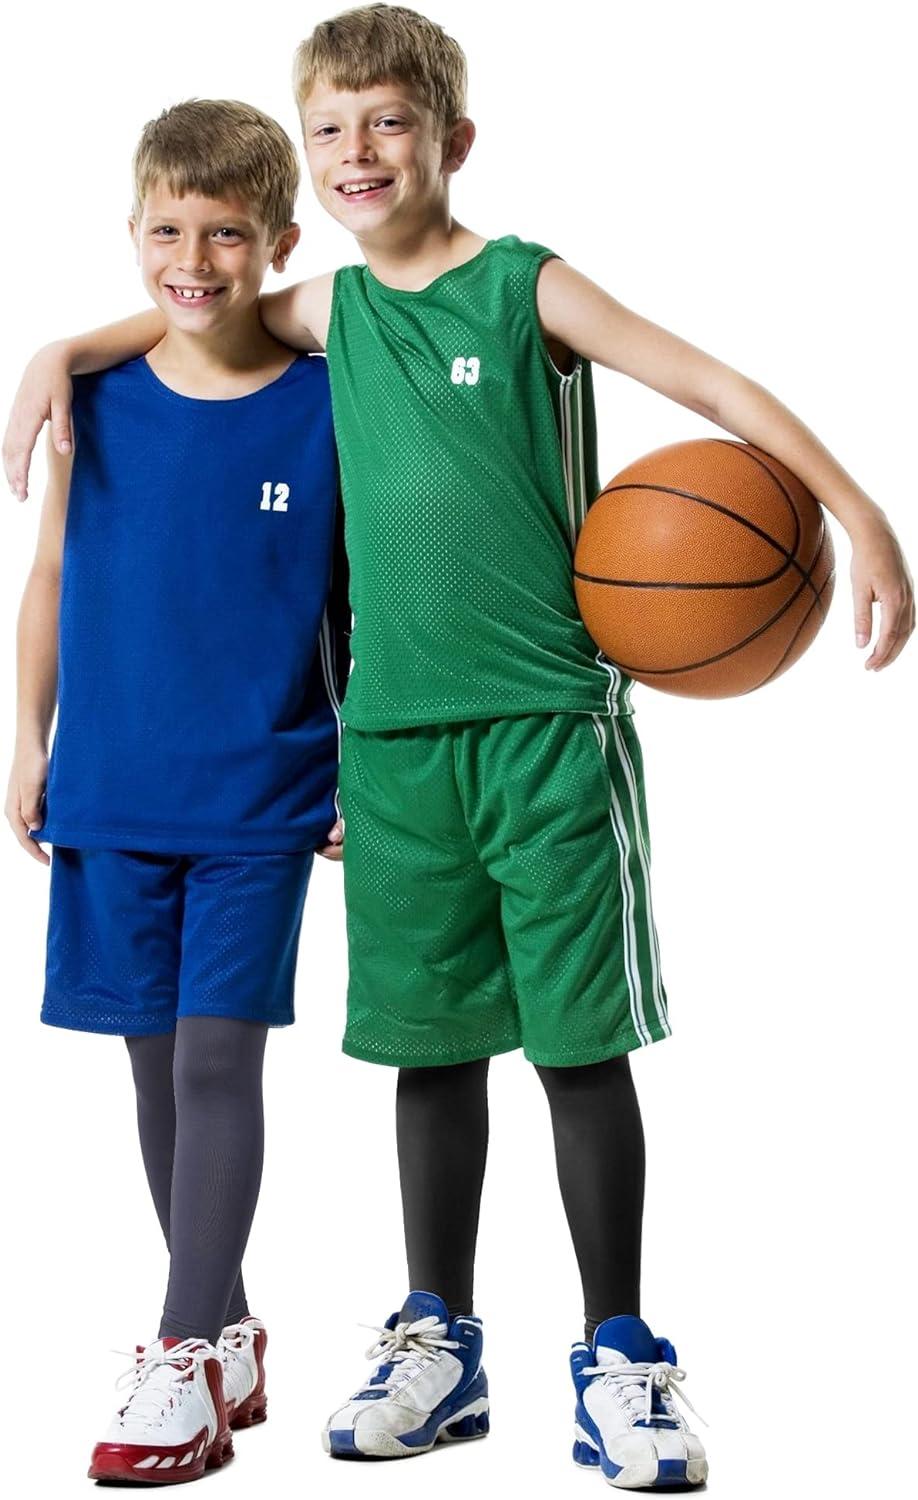 Boys Tights Basketball